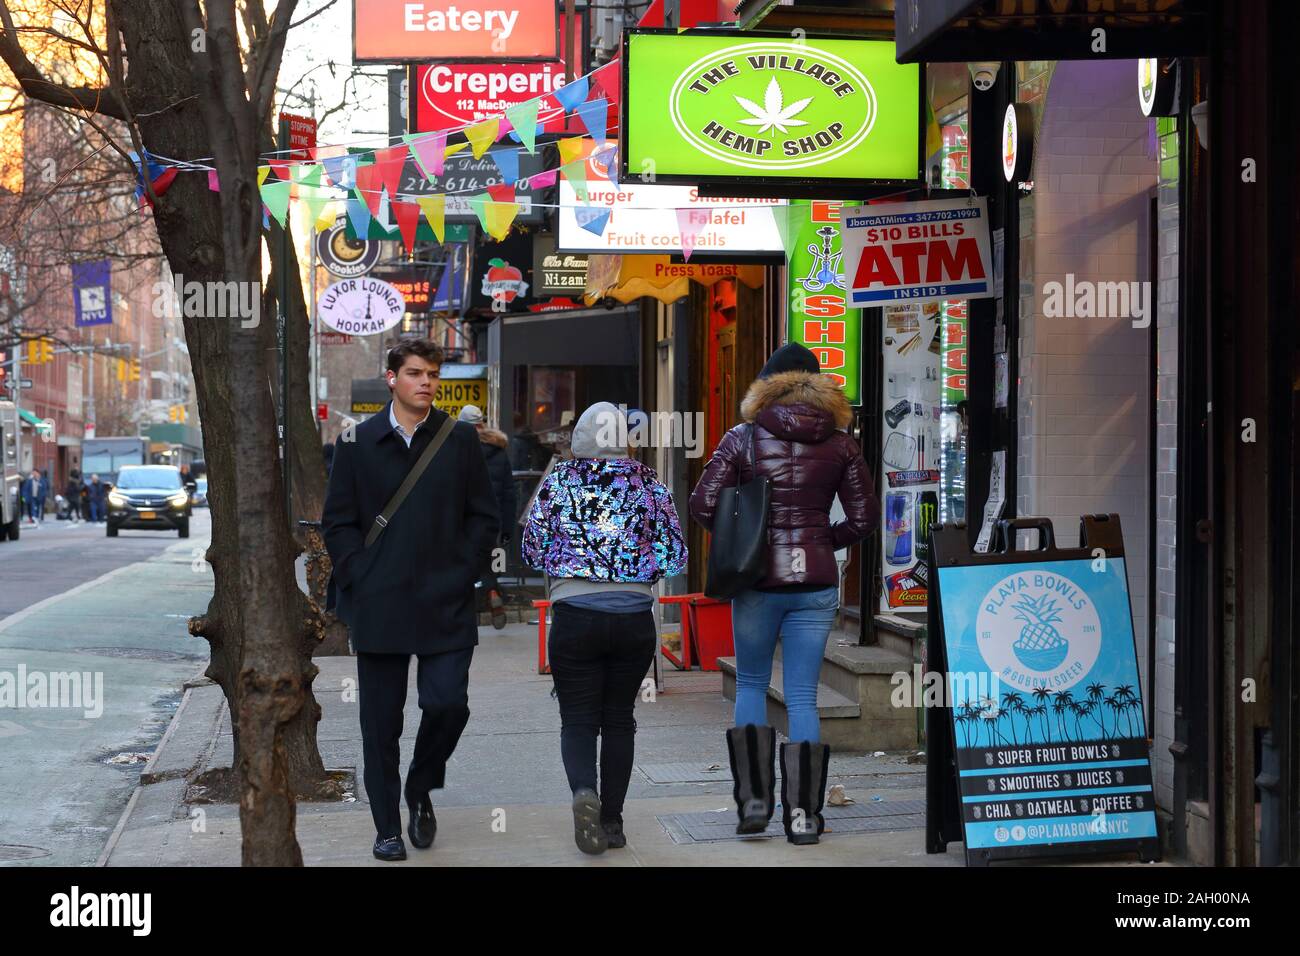 Personnes marchant sur Macdougal St près de l'Université de New York dans le quartier de Greenwich Village de Manhattan à New York, NY (20 décembre 2019) Banque D'Images